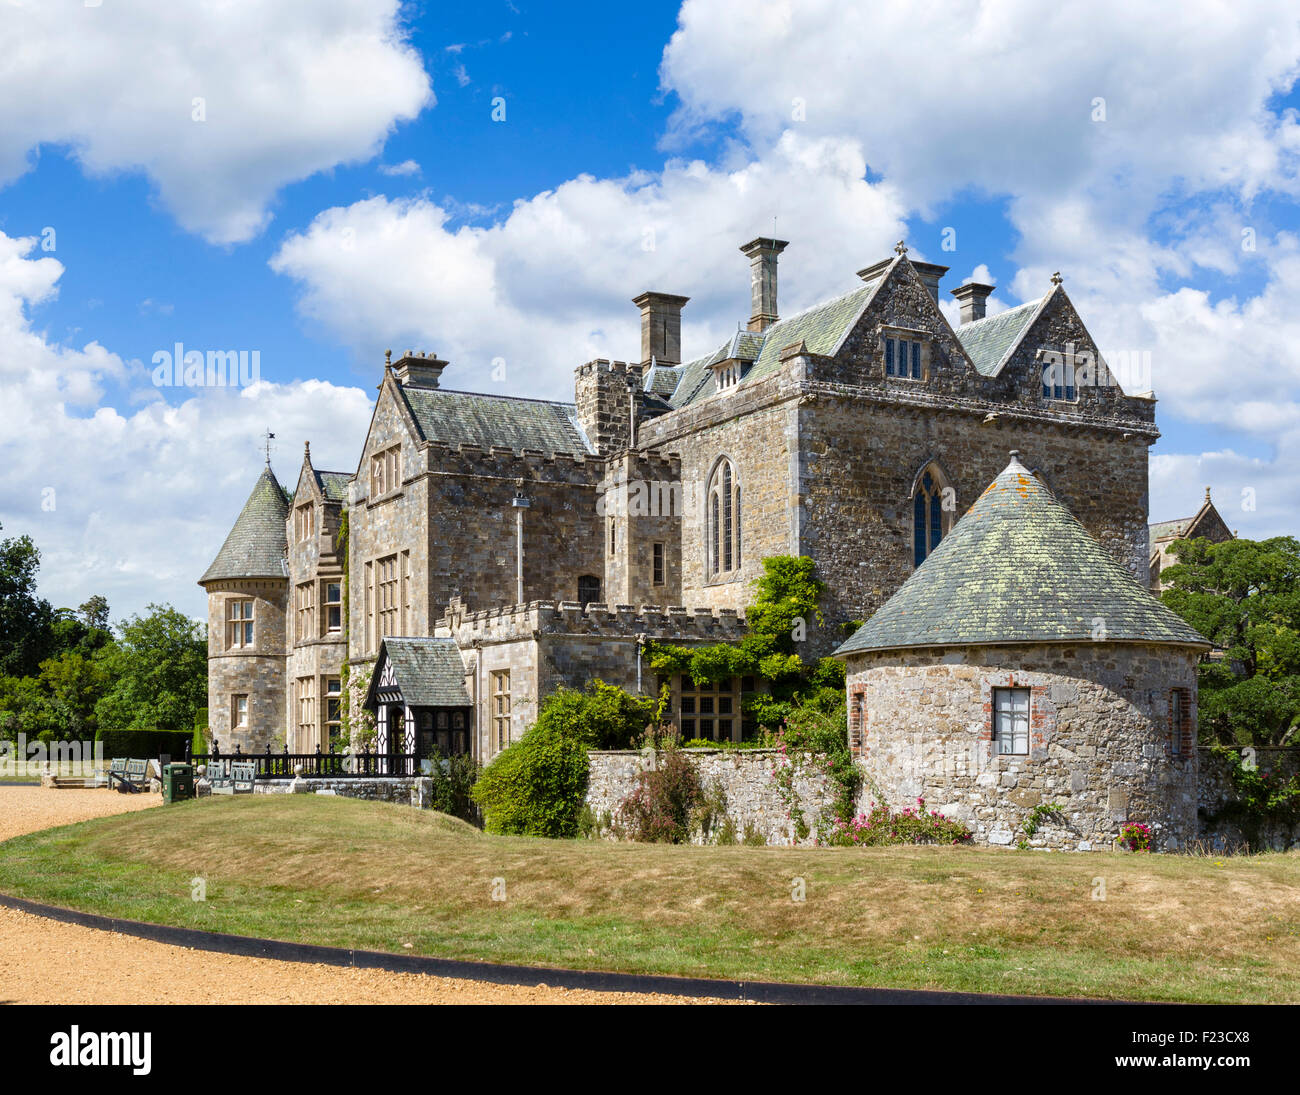 Beaulieu Palace House, home of the Barons Montagu, Beaulieu, Hampshire, England, UK Stock Photo